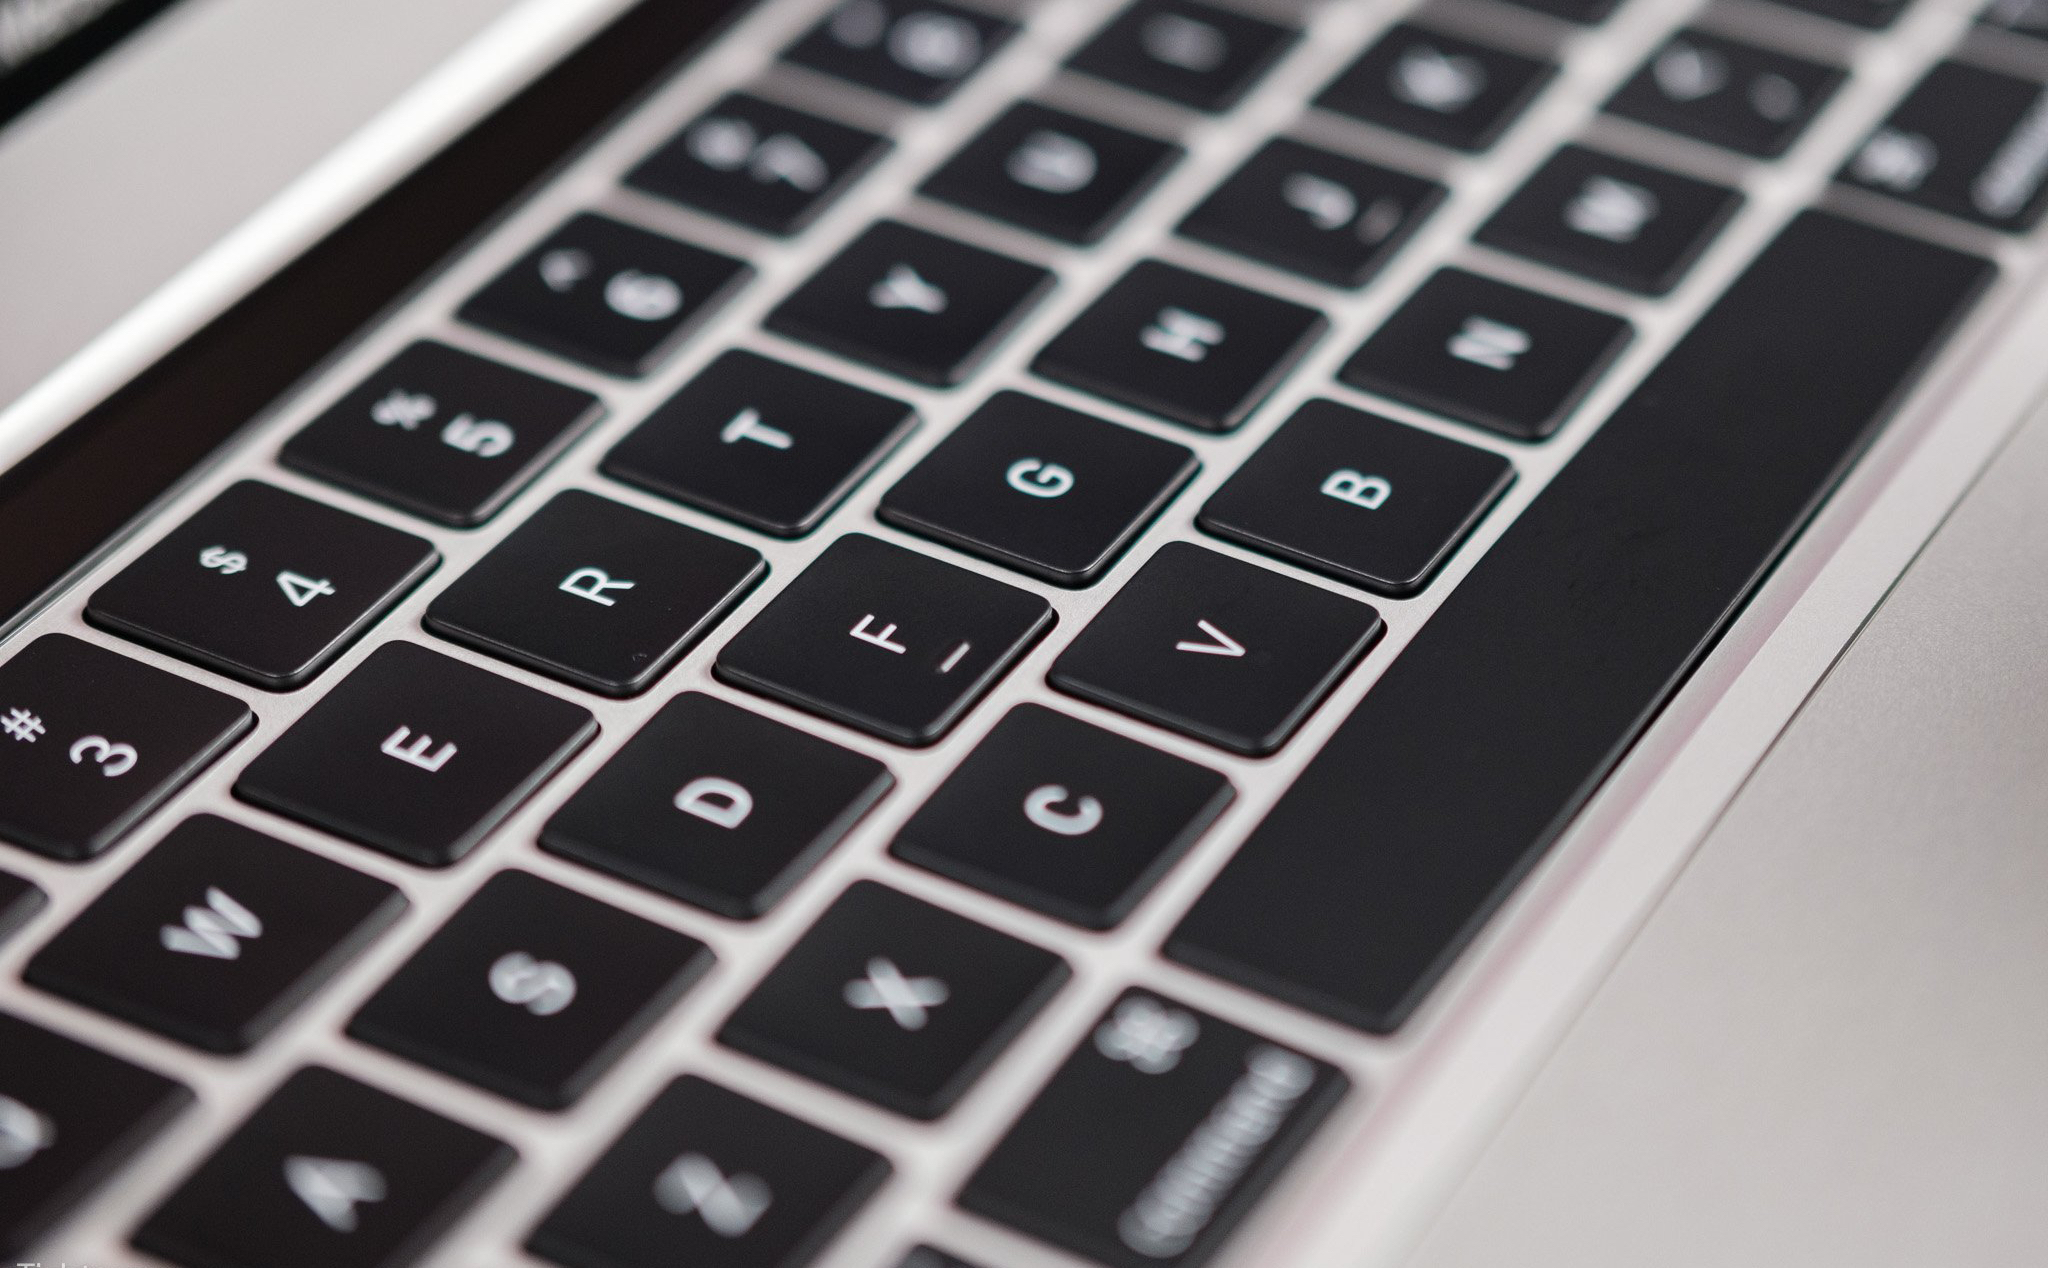 Bằng sáng chế mới cho MacBook: Bề mặt mỗi phím bấm sẽ có một "màn hình mini" để tinh chỉnh phím